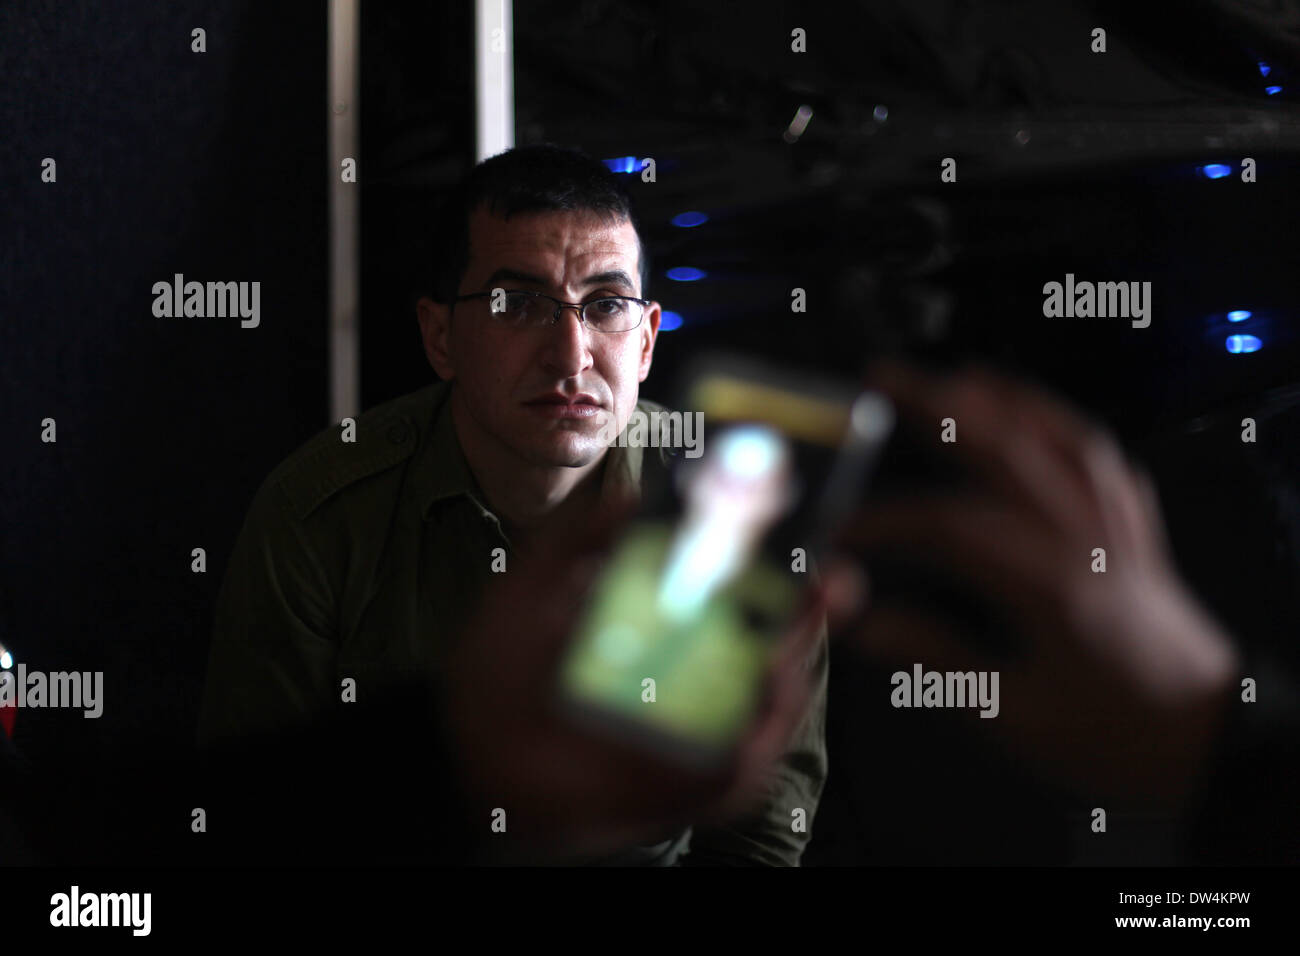 Gaza, Palästinensische Gebiete. 27. Februar 2014. Majed Jundiyeh Direktor hält ein Mobiltelefon, das Bild von Gilad Schalit, der Gestalt des Schauspielers Mahmoud Karira zu vergleichen, die den Charakter von Shalit in einen Film im Gaza-Streifen namens "Verlieren Shalit" spielen wird. "Schalit verliert", derzeit in dem abgeriegelten Gebiet gefilmt wird, ist der erste einer geplanten dreiteiligen Serie über die 2006 Aufnahme des israelischen Soldaten Gilad Schalit von bewaffneten verbündete sich mit den islamischen Militanten Hamas-Bewegung. Teile zwei und drei werden Schalits Zeit in Gefangenschaft und seine 2011 Swap für Hunderte von palästinensischen Pr darzustellen. Stockfoto